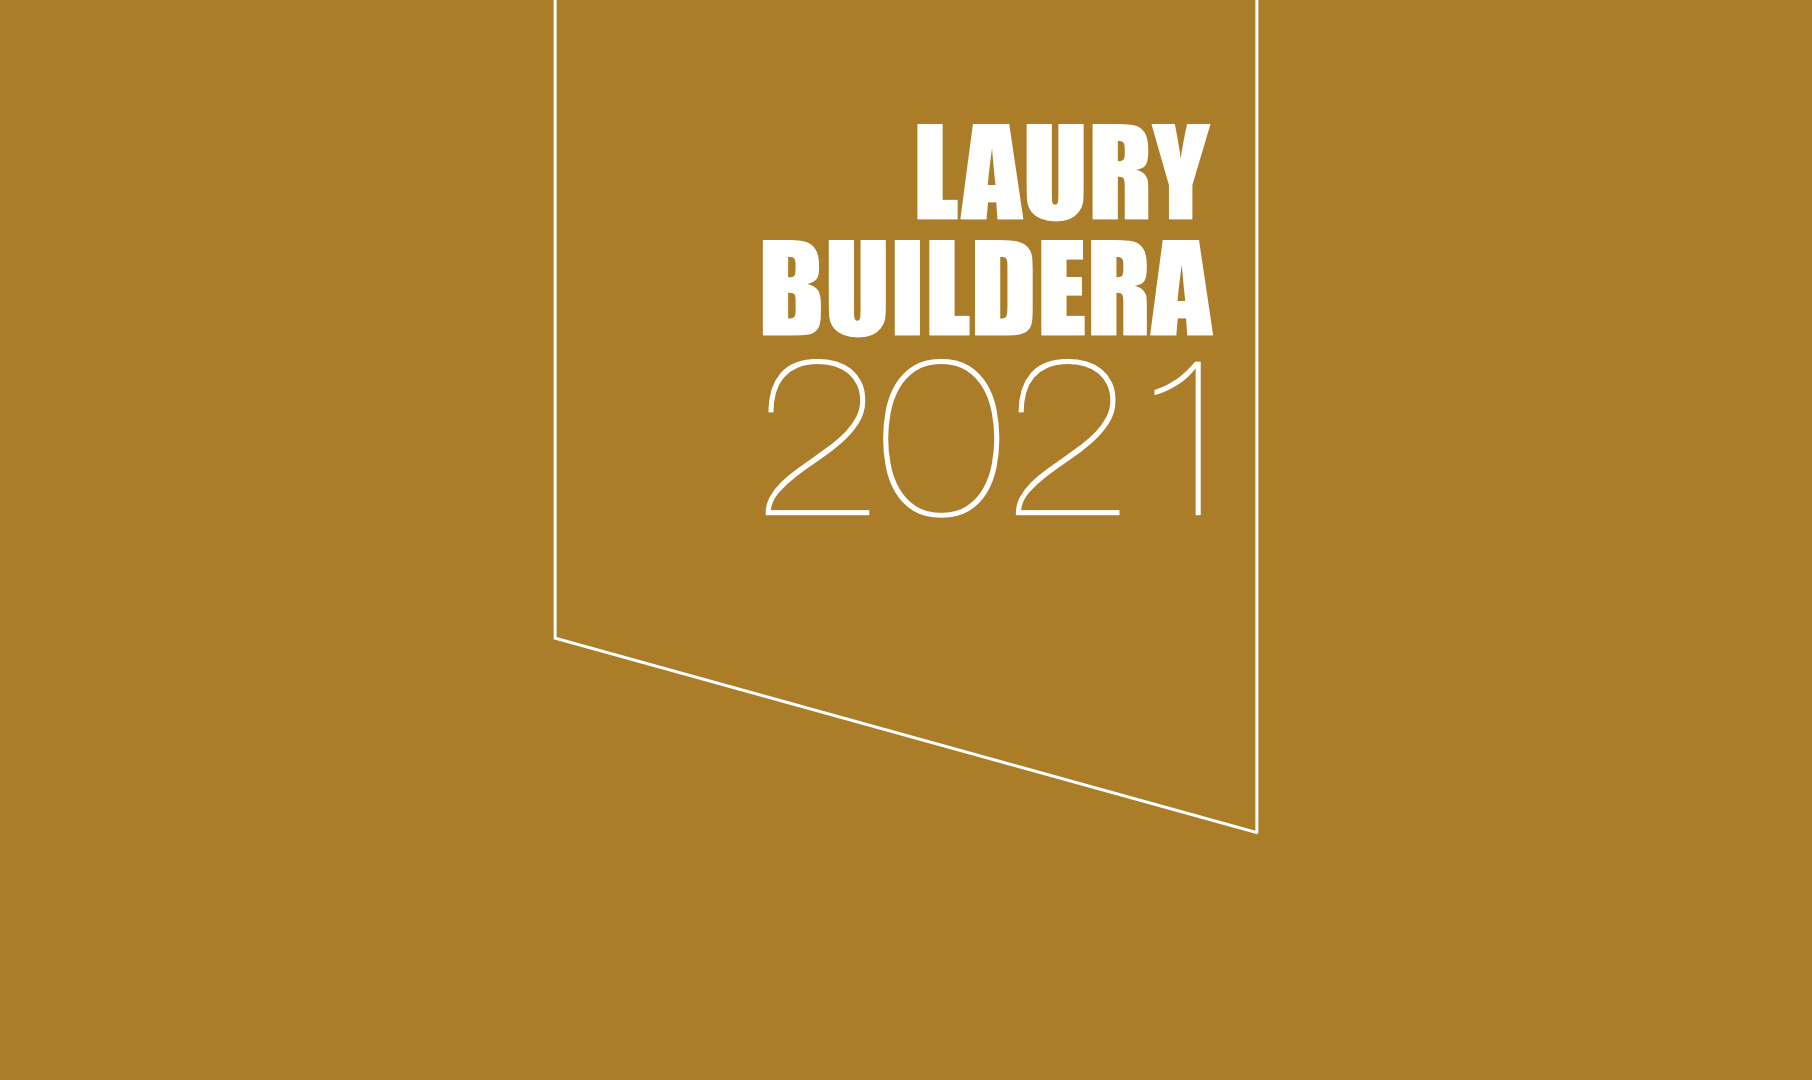 LAUREACI WYRÓŻNIENIA LAURY BUILDERA 2021